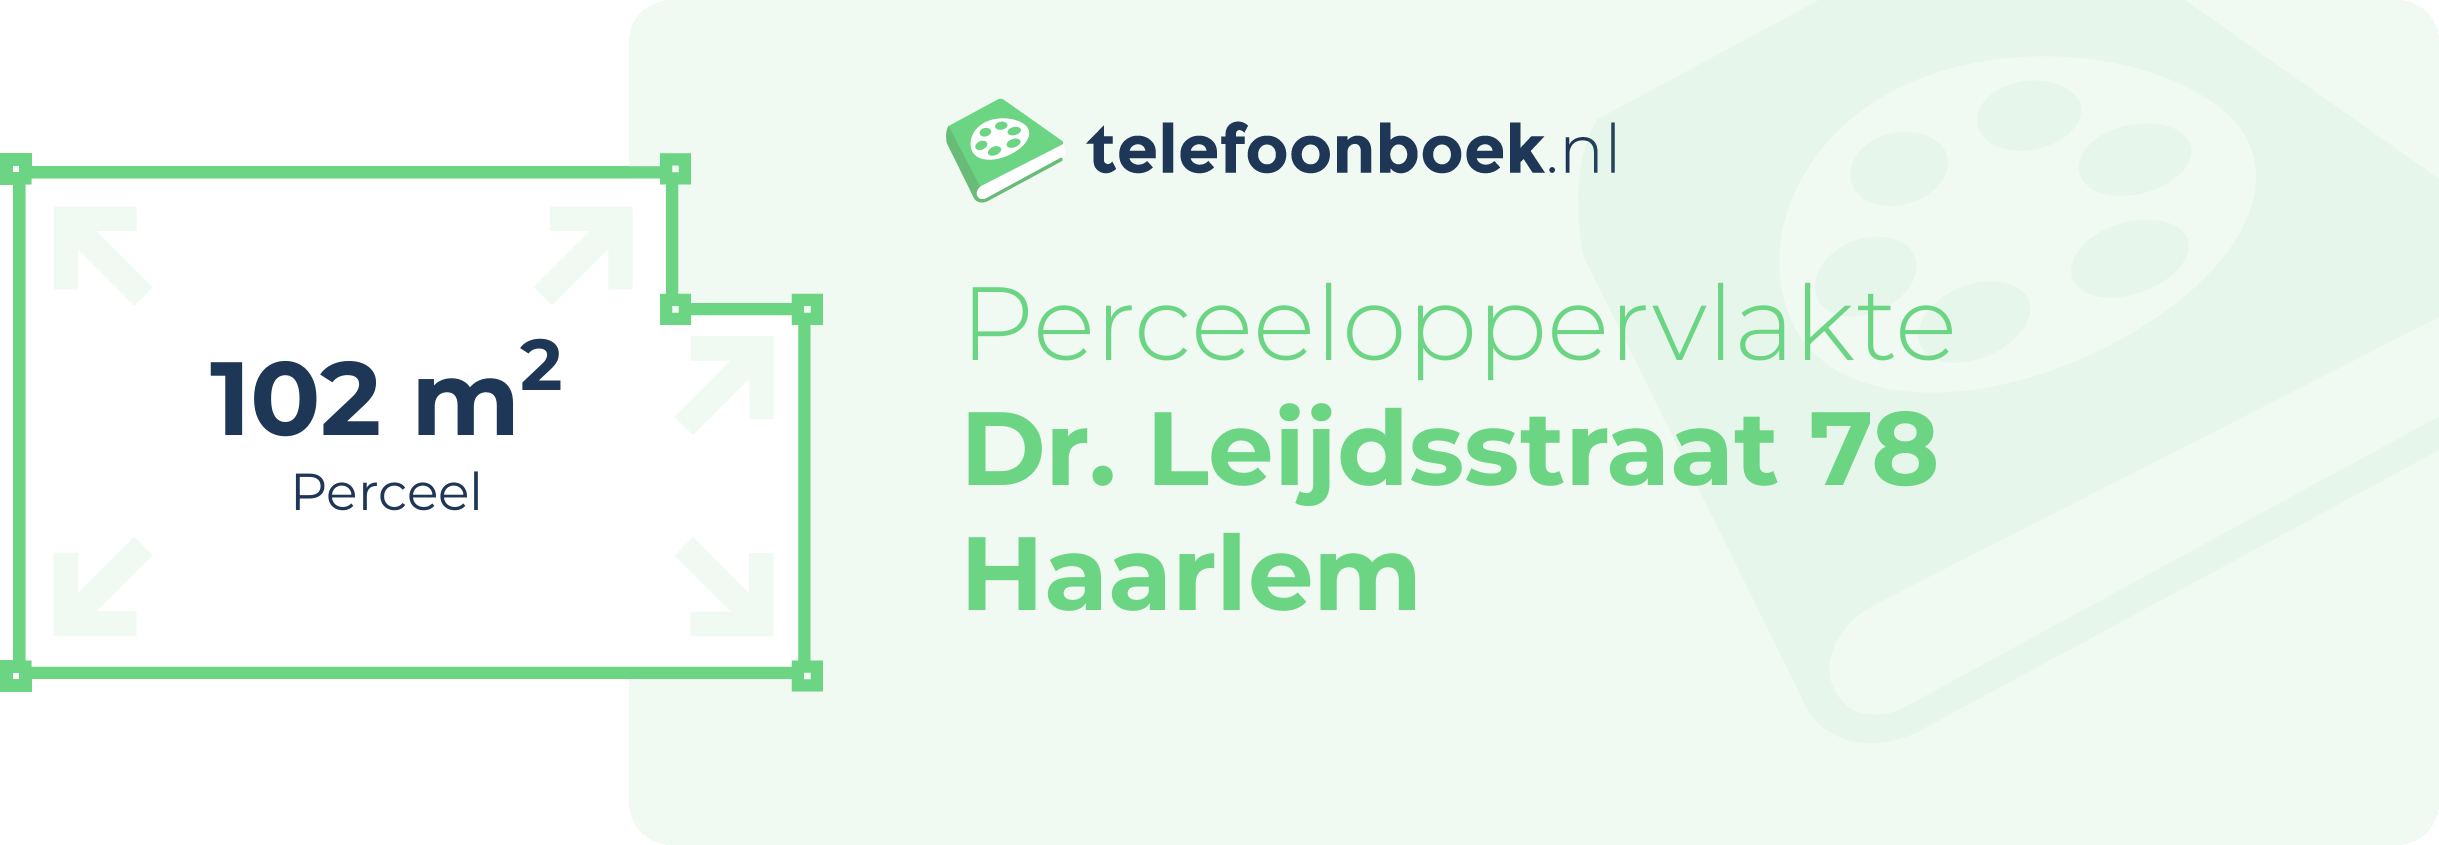 Perceeloppervlakte Dr. Leijdsstraat 78 Haarlem